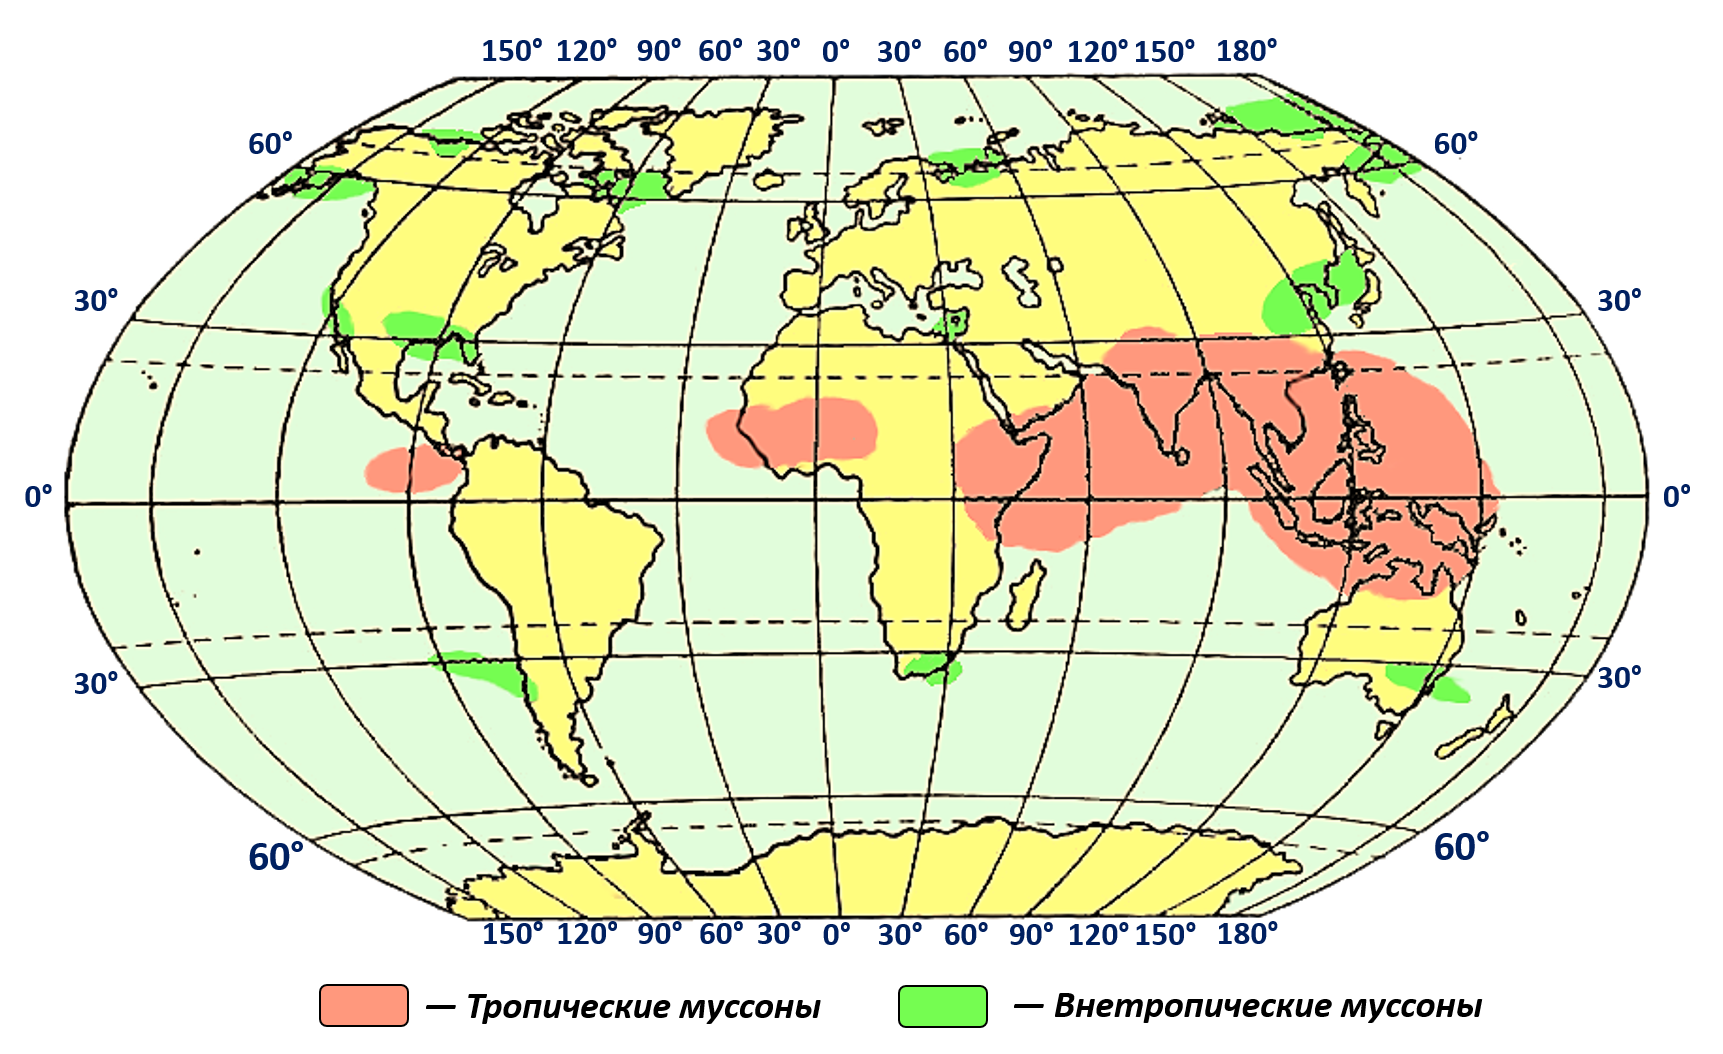 Внетропические Муссоны. Картатропичемких муссонов. Распространение муссонов. Тропические Муссоны на карте.